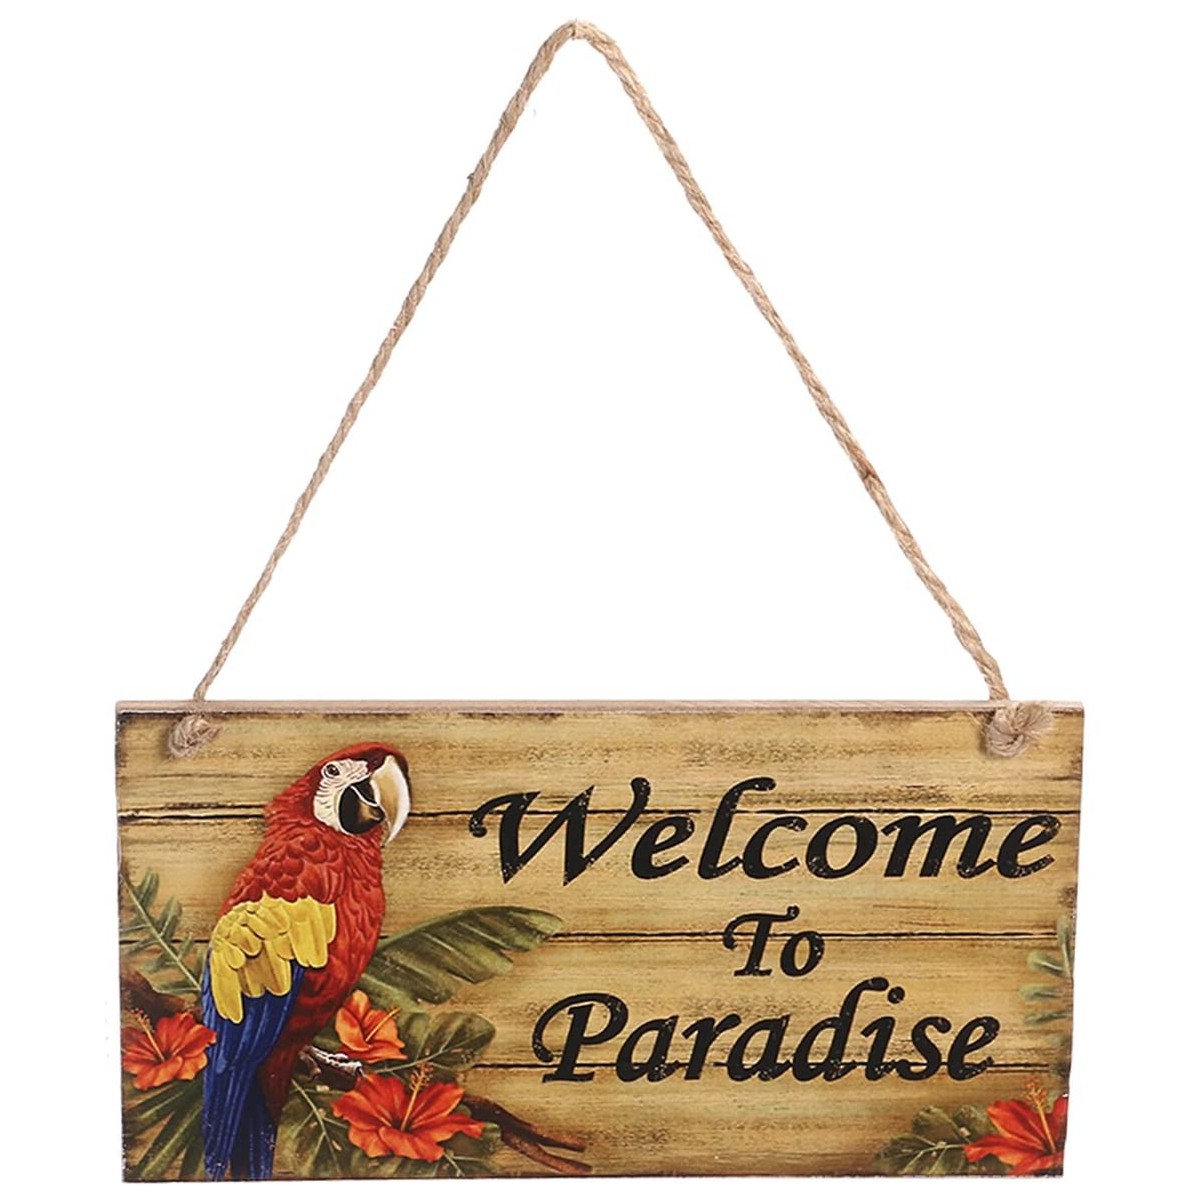 Cartello rettangolare con scritta “Welcome to Paradise”, in legno, insegna